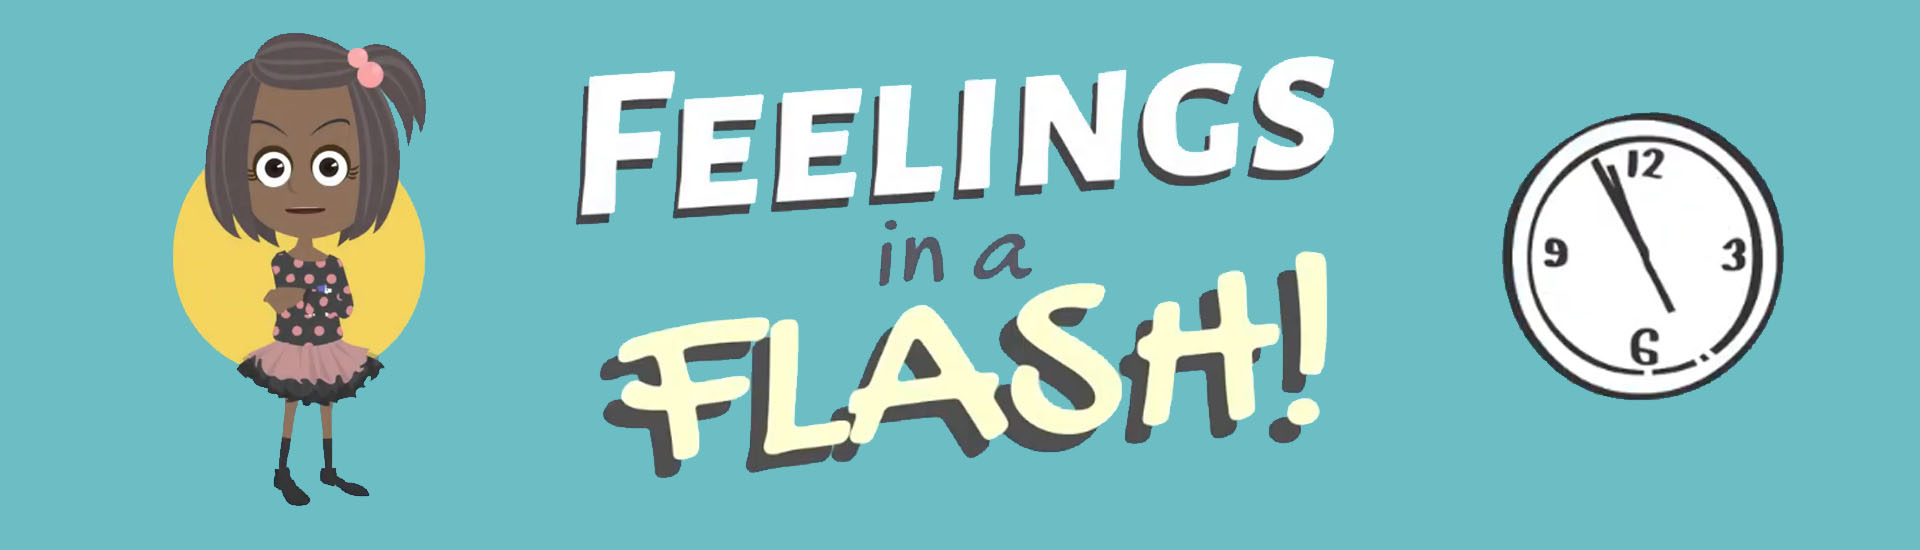 Feelings in a Flash